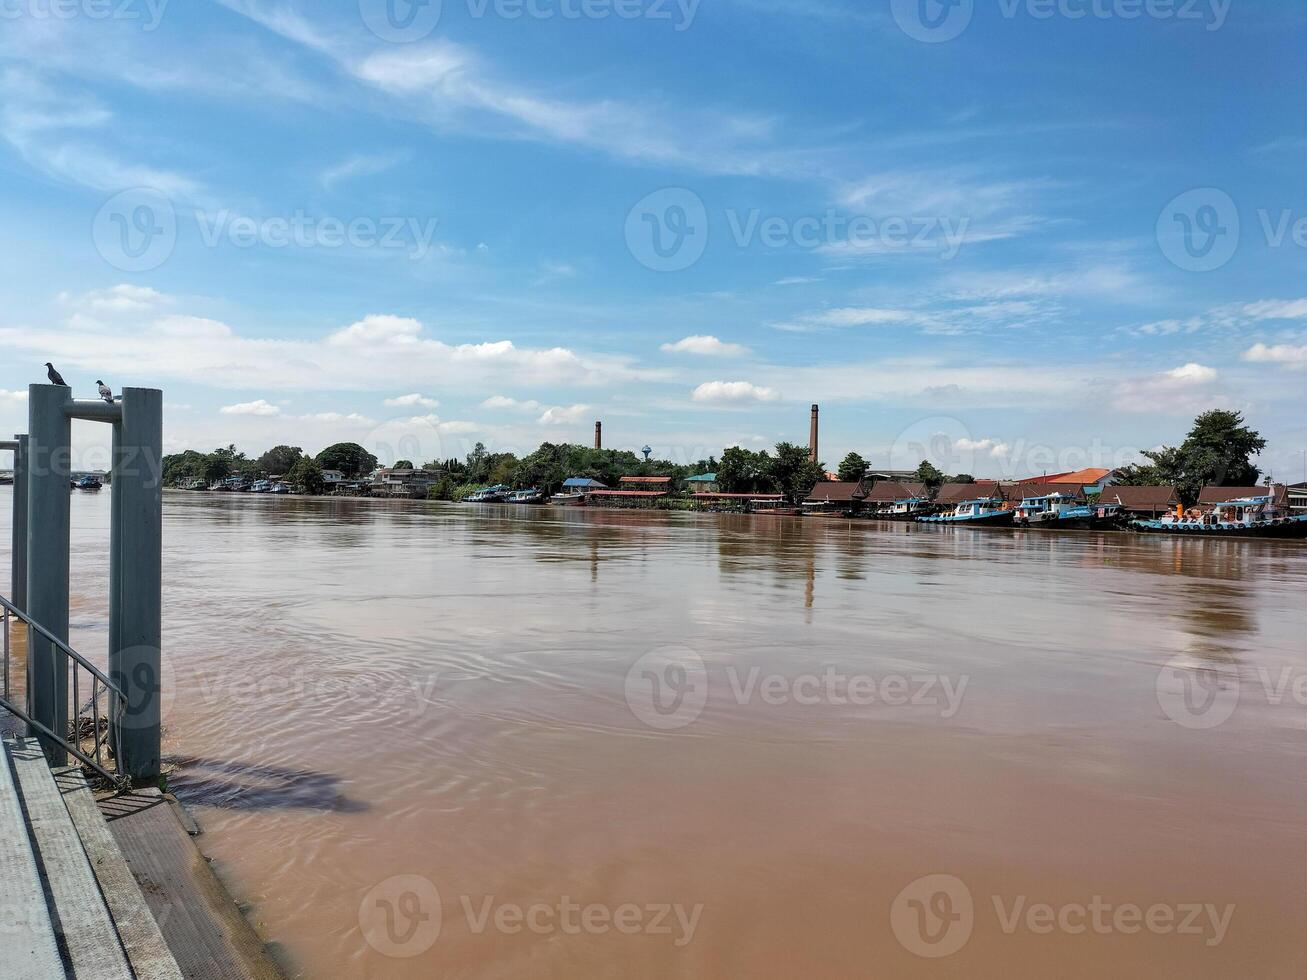 chao phraya río, phra nakhon si ayutthaya provincia, Tailandia foto